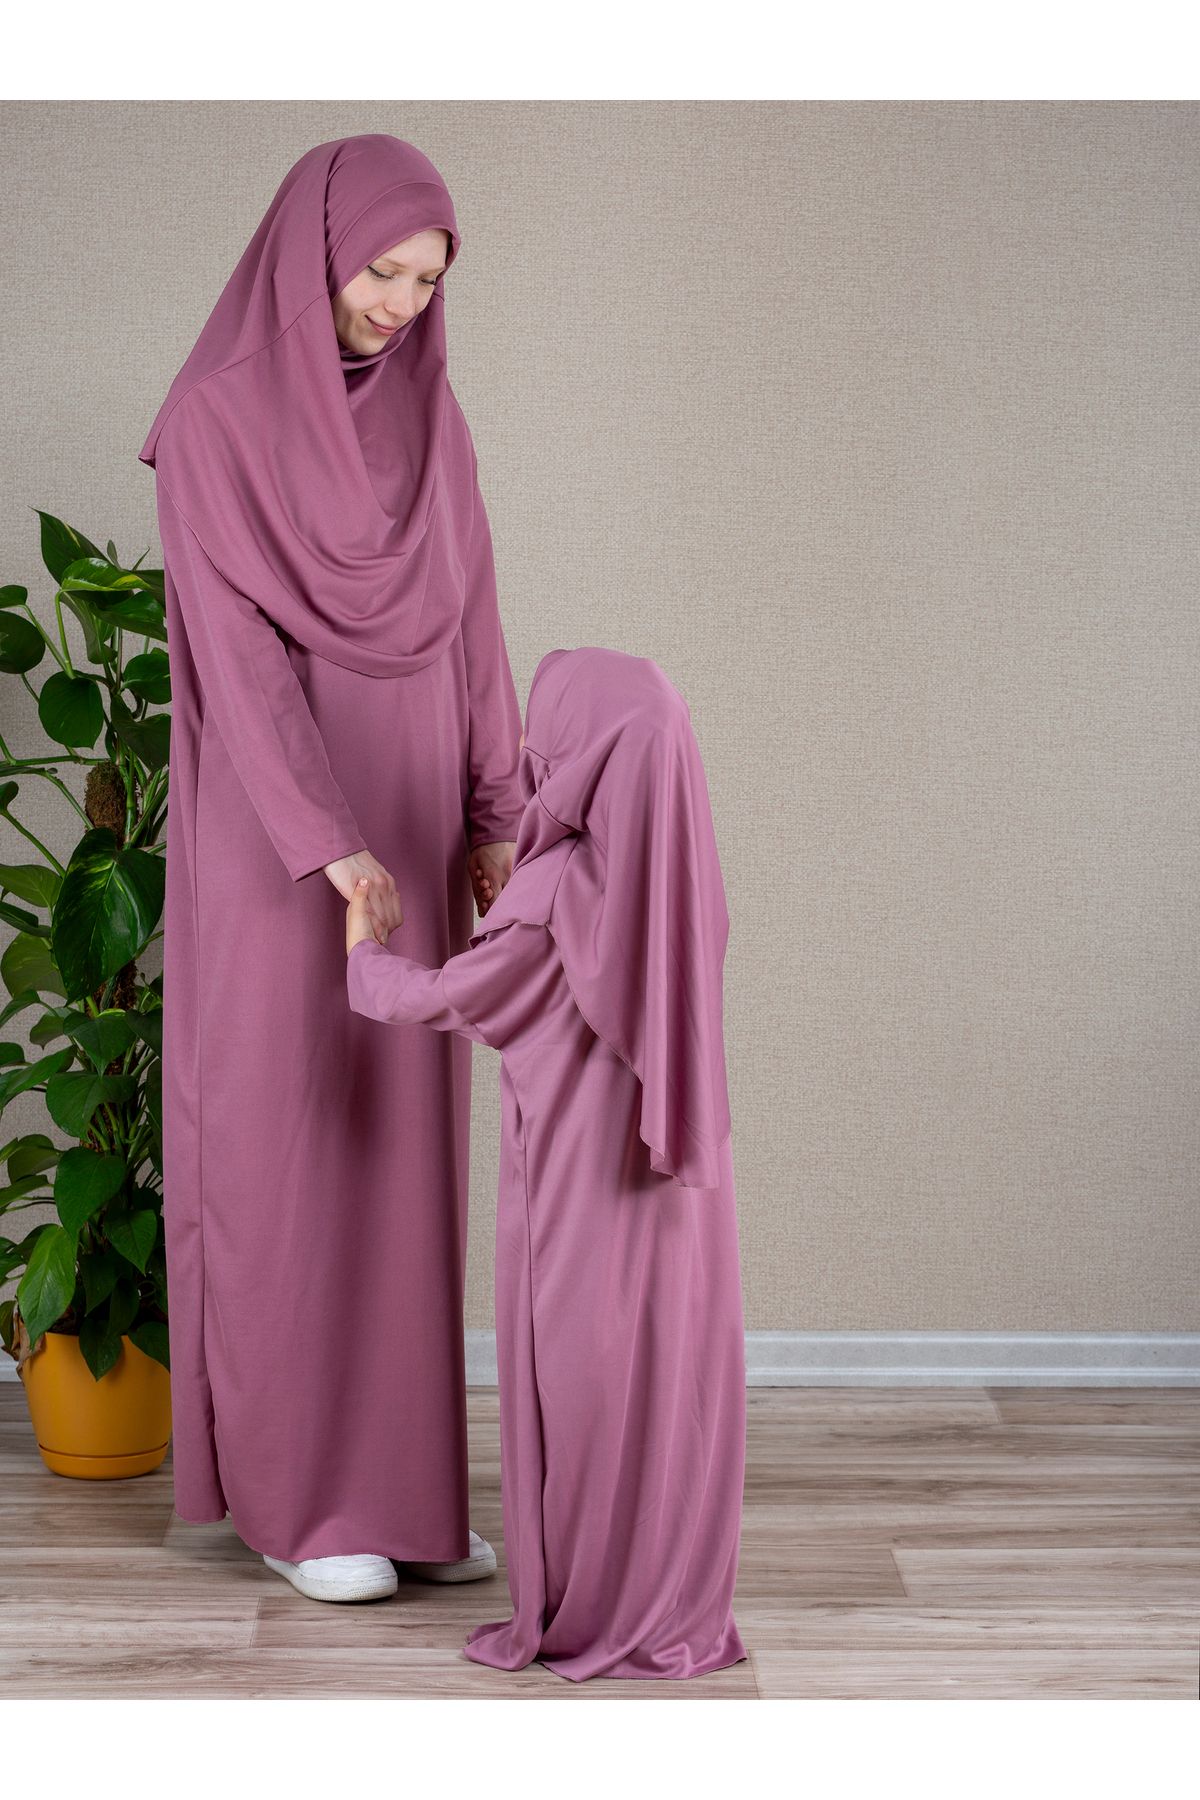 dua' is Anne Kız Kombin Tek Parça Namaz Elbisesi (2 adet) Beden için açıklamayı okuyun